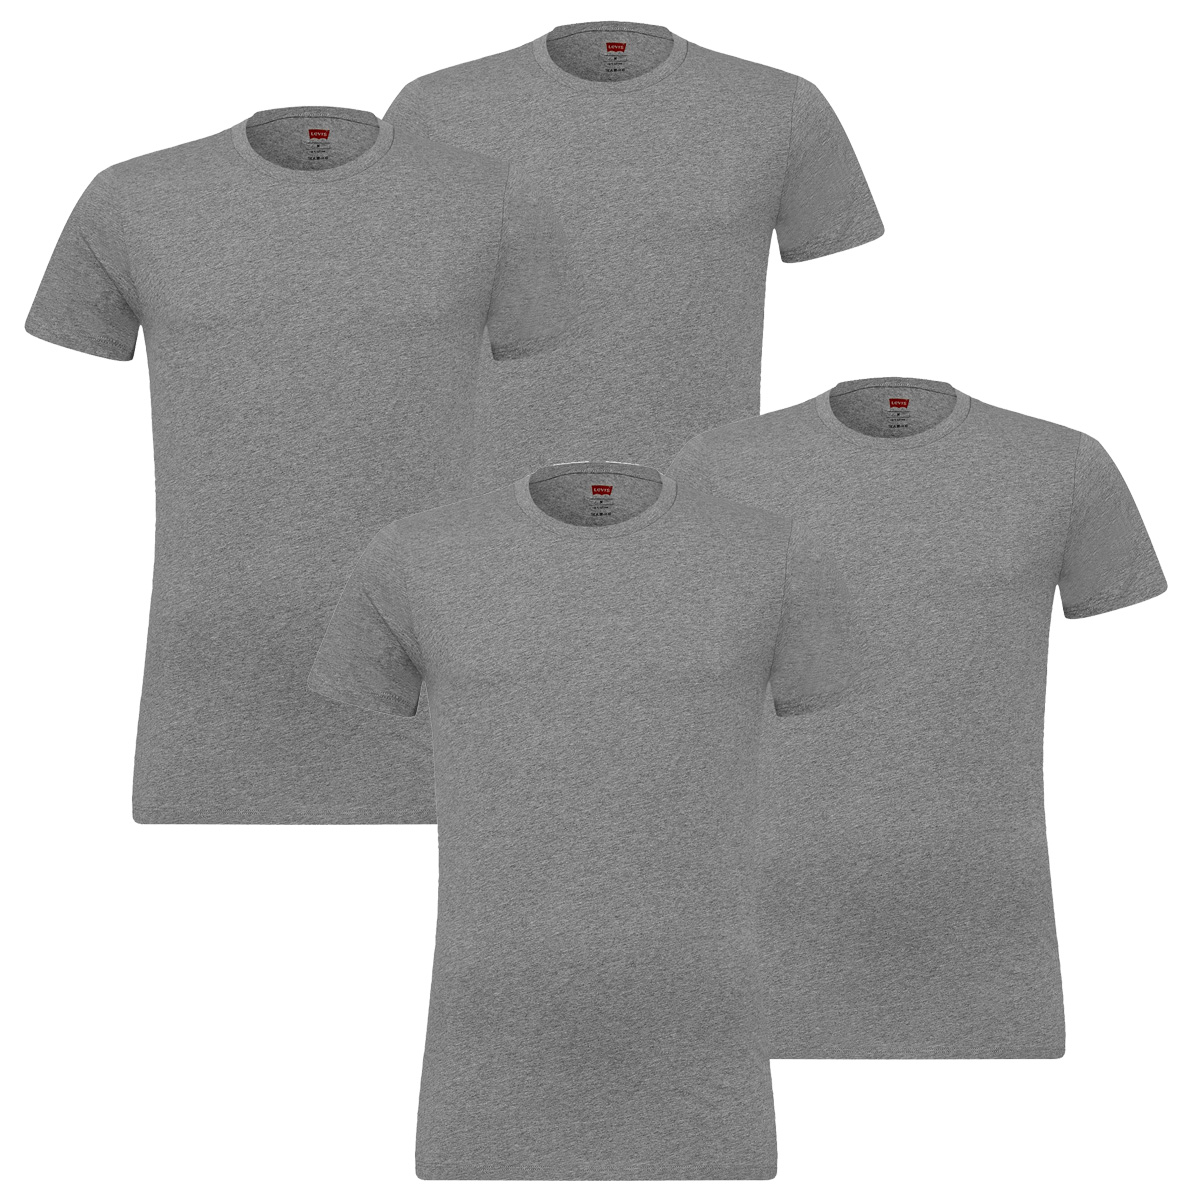 4er Pack Levis Solid Crew T-Shirt Men Herren Unterhemd Rundhals Stretch Cotton